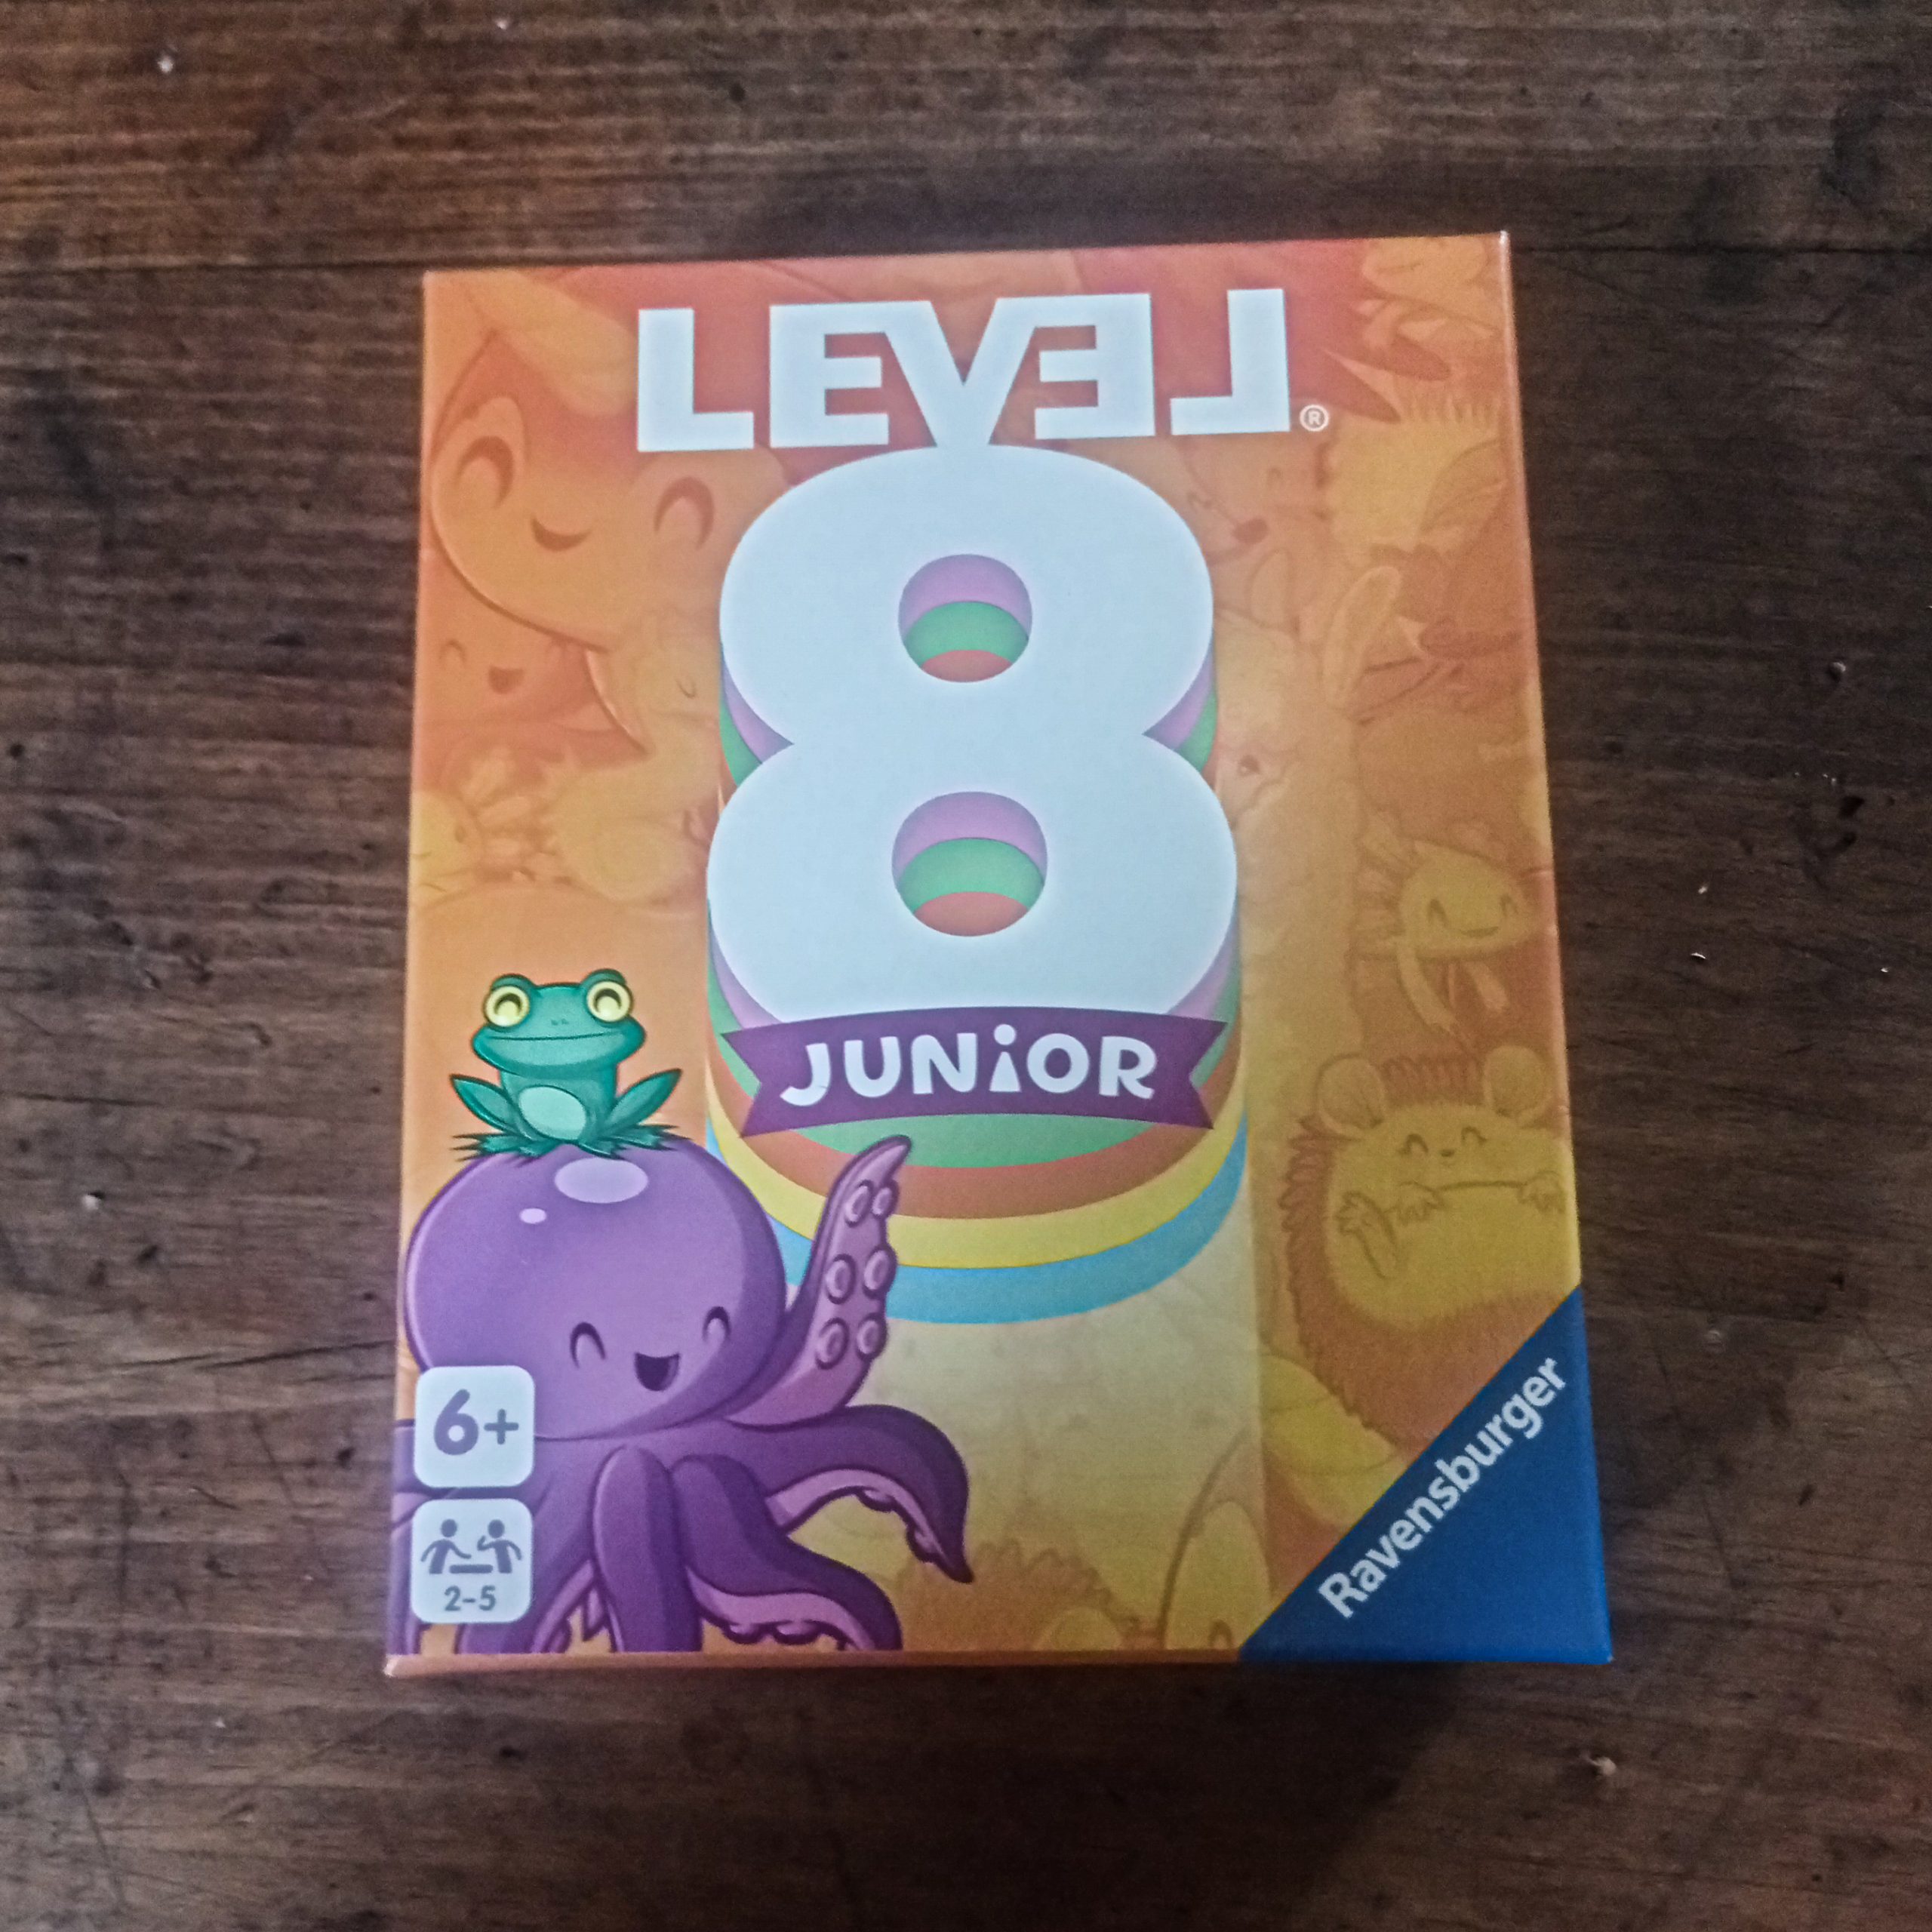 Jeux de société - Level 8 junior